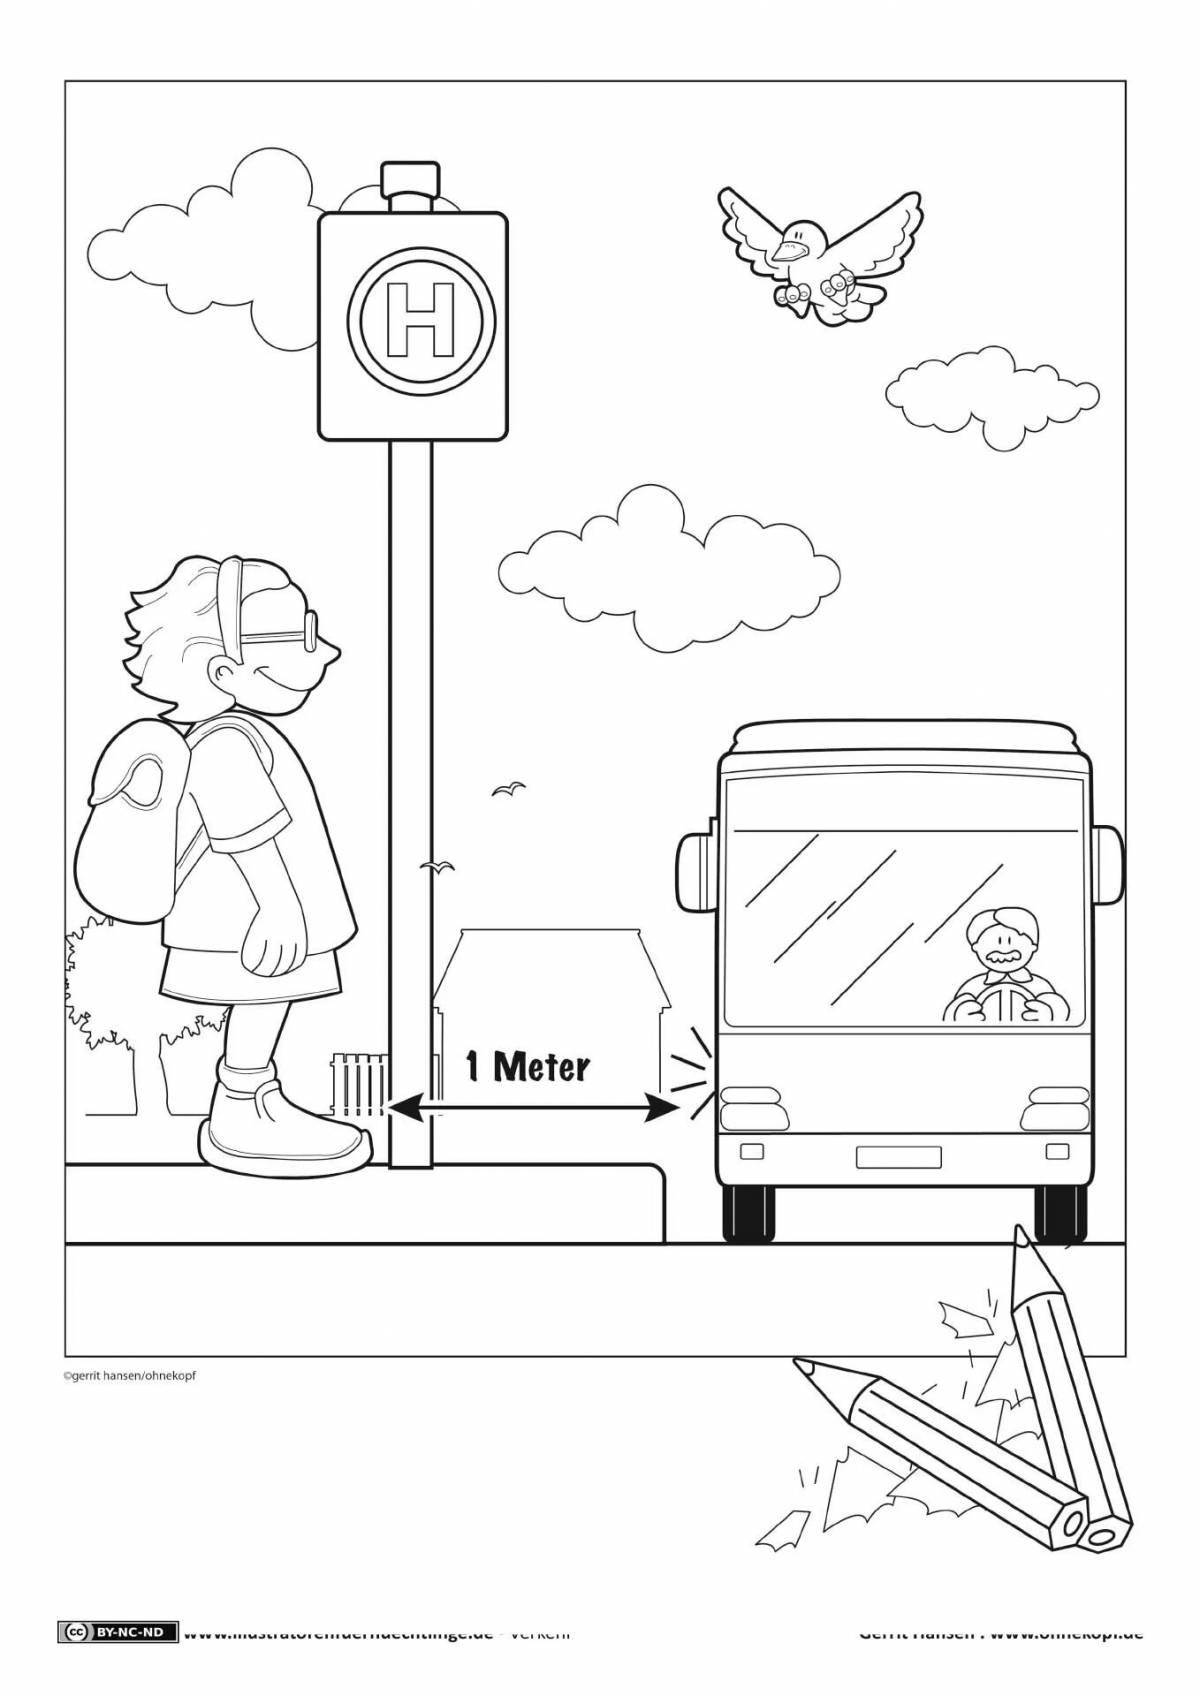 Иллюстративная раскраска правила дорожного движения зимой для детей